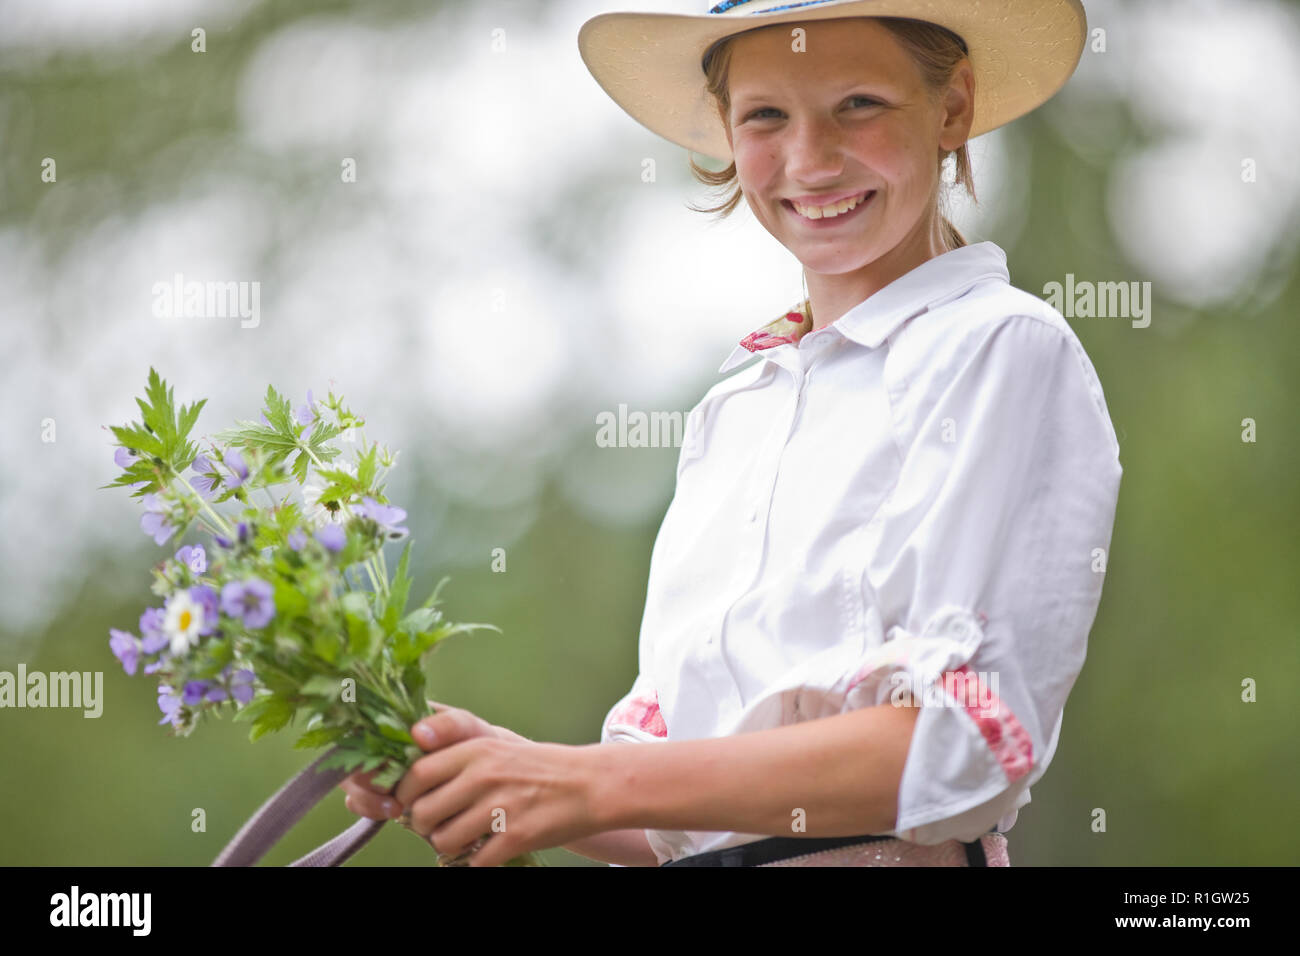 Girl on horseback holding bunch of flowers Stock Photo